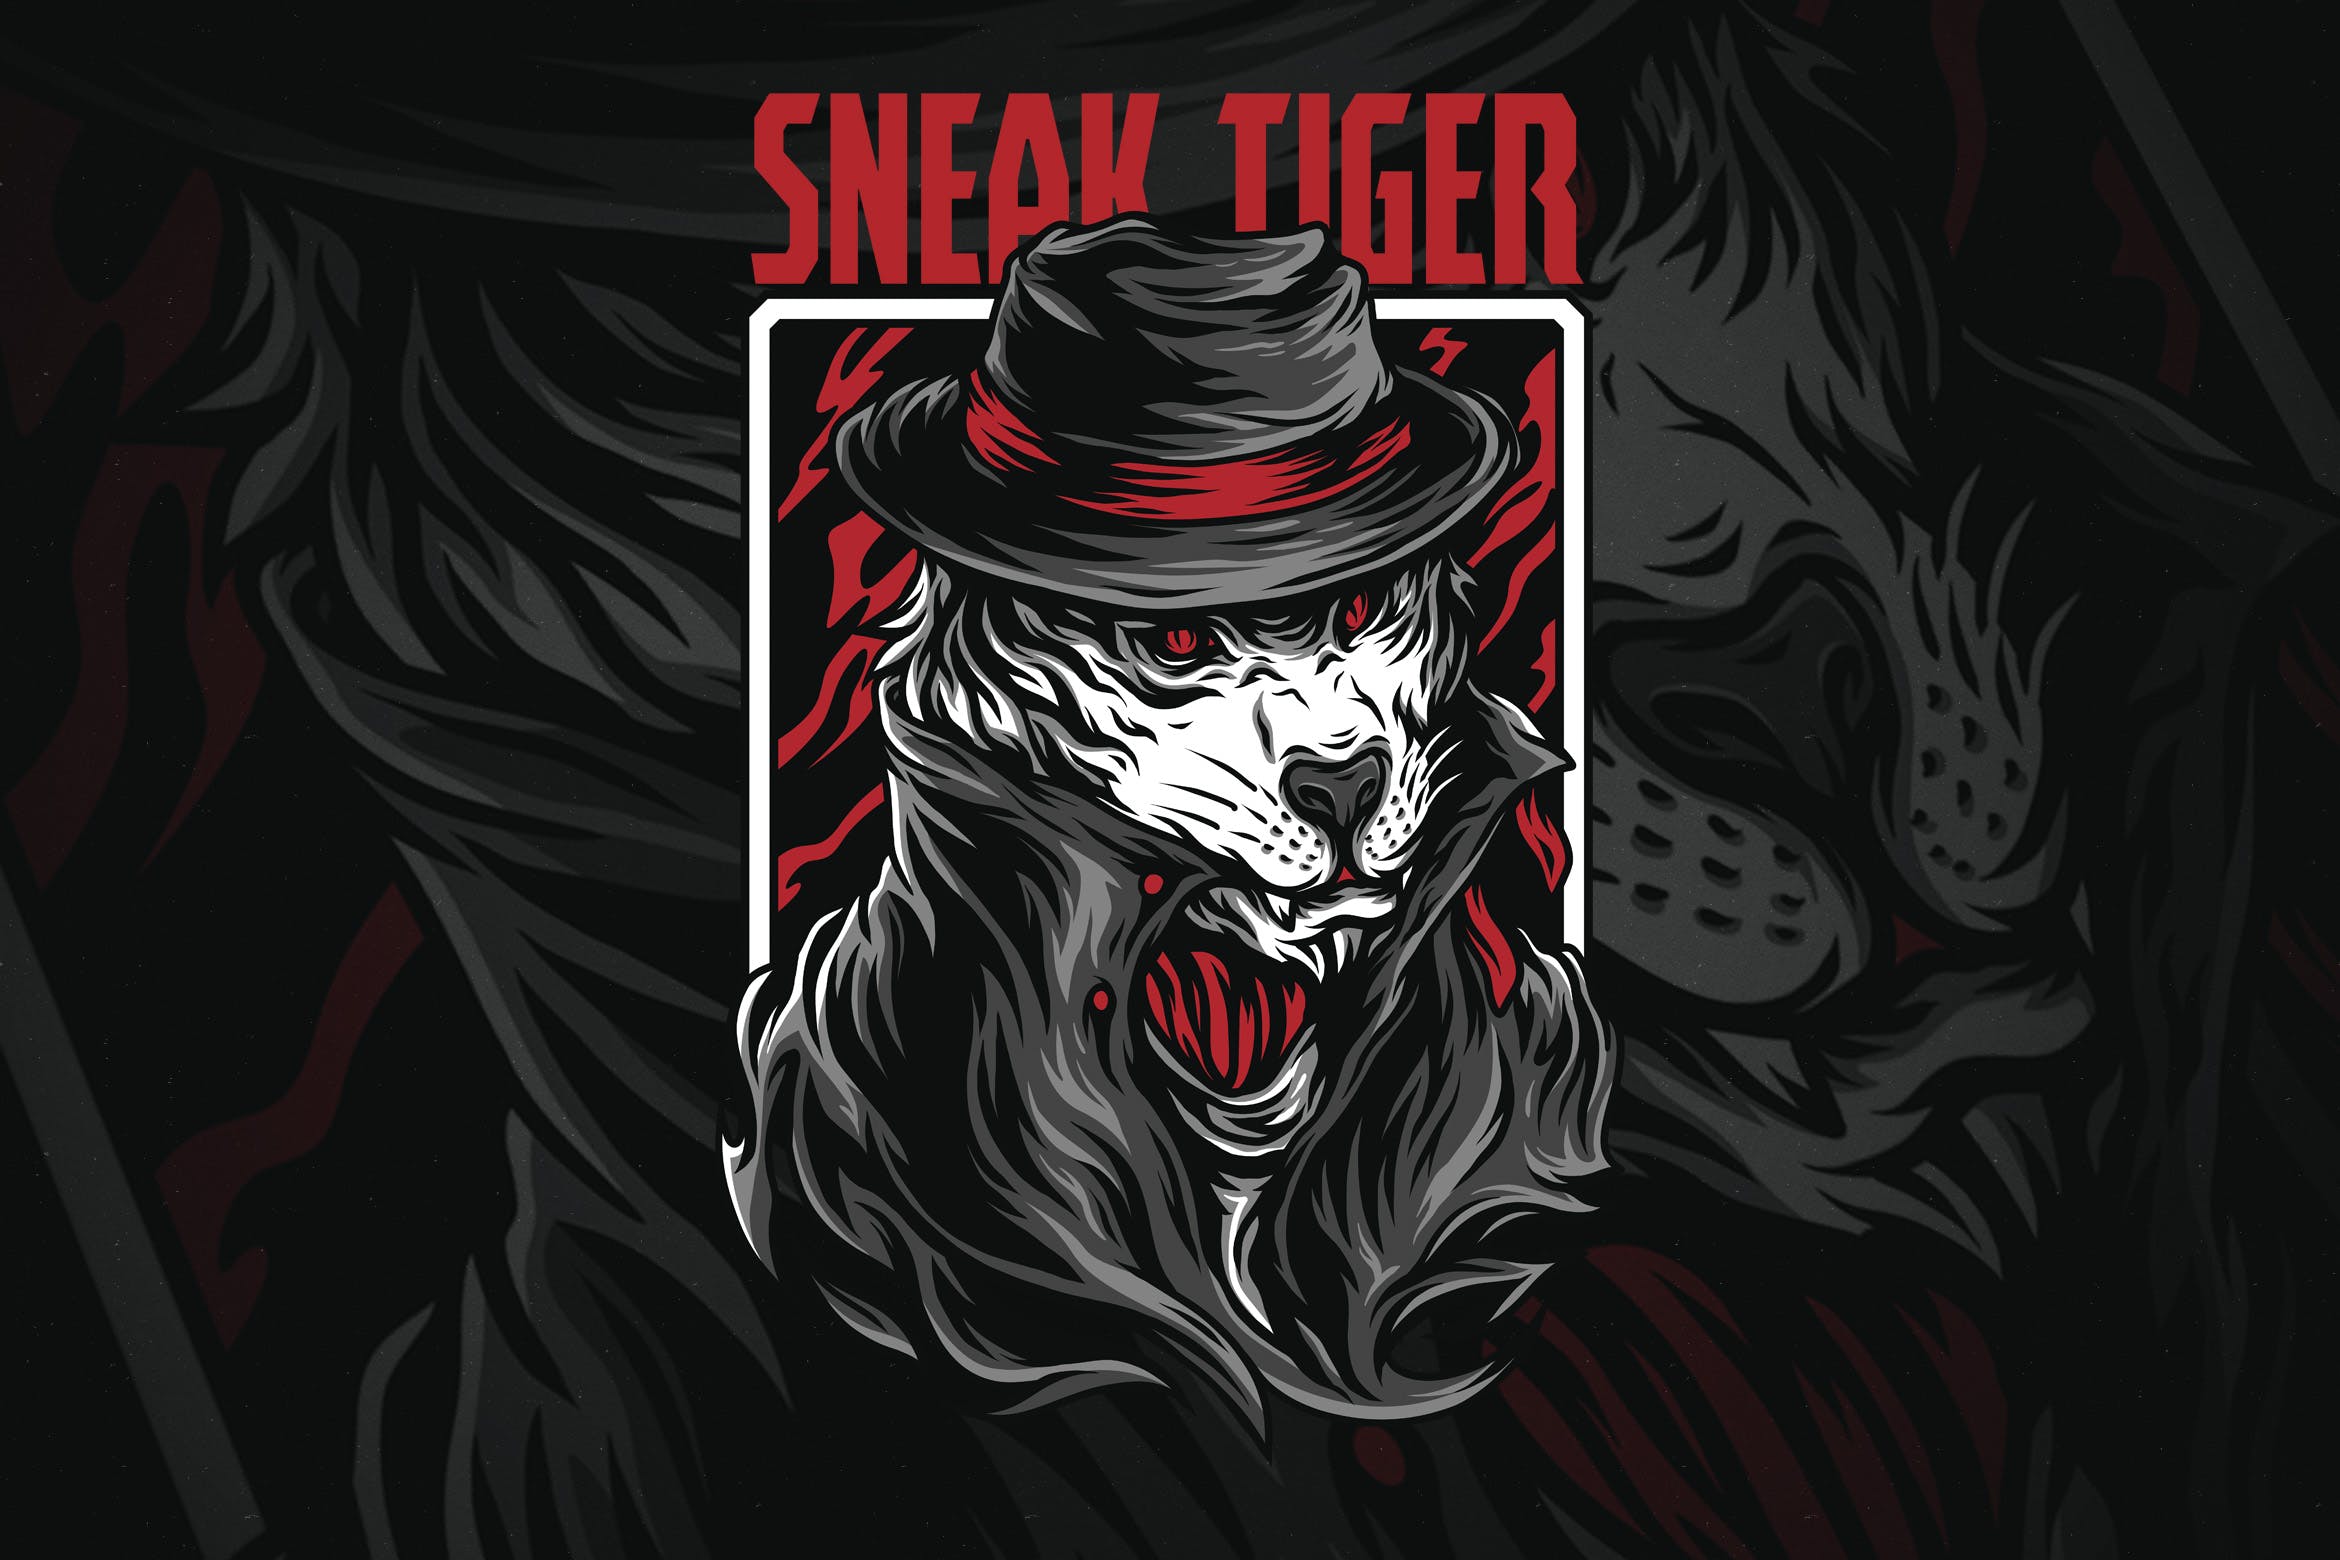 黑帮之虎潮牌T恤印花图案16图库精选设计素材 Sneak Tiger插图